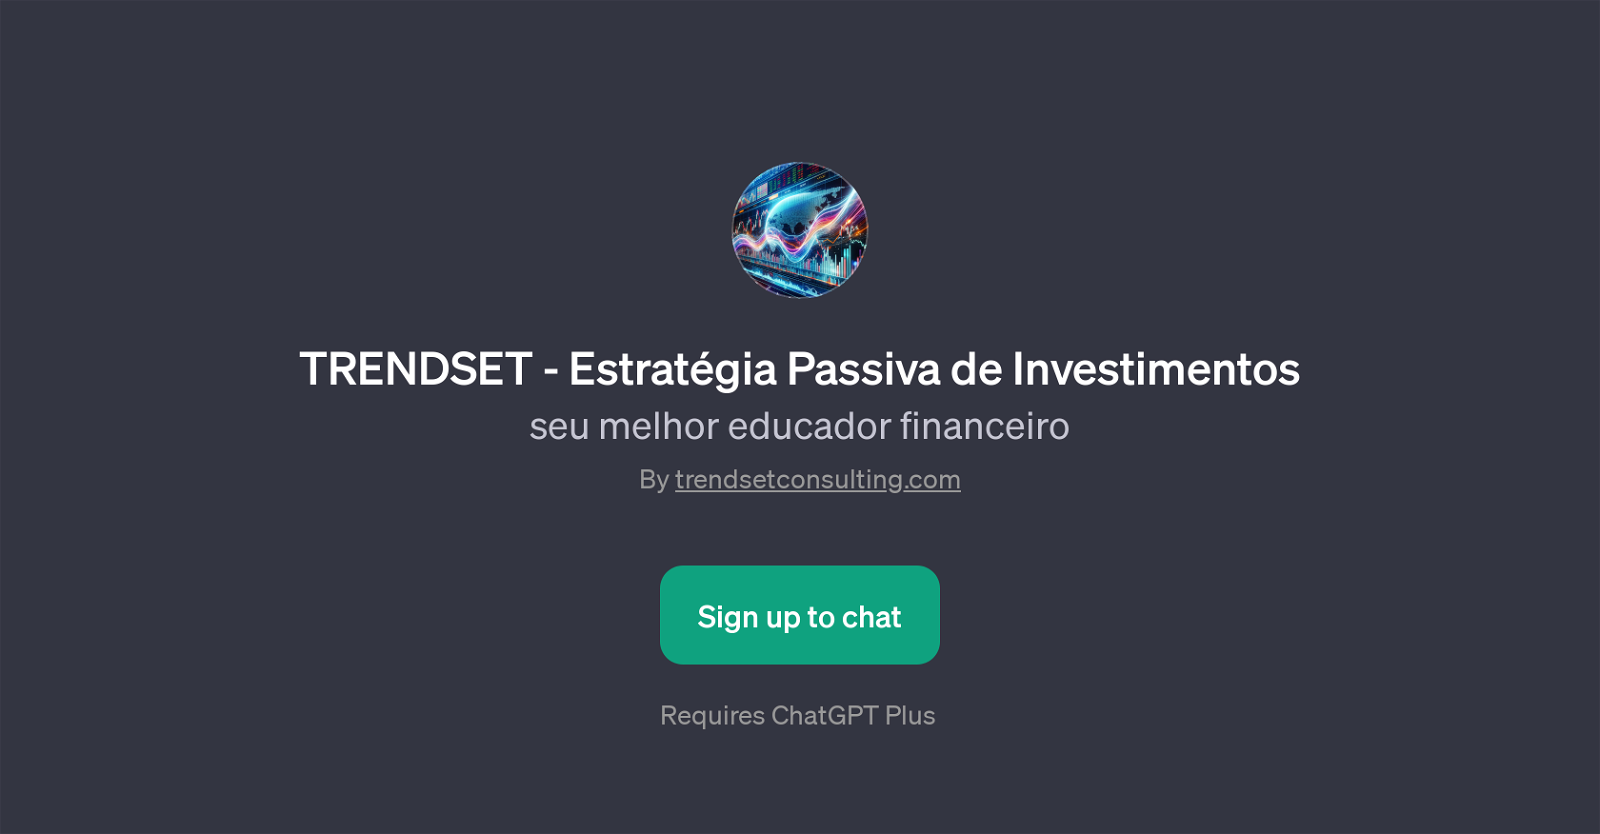 TRENDSET - Estratgia Passiva de Investimentos website